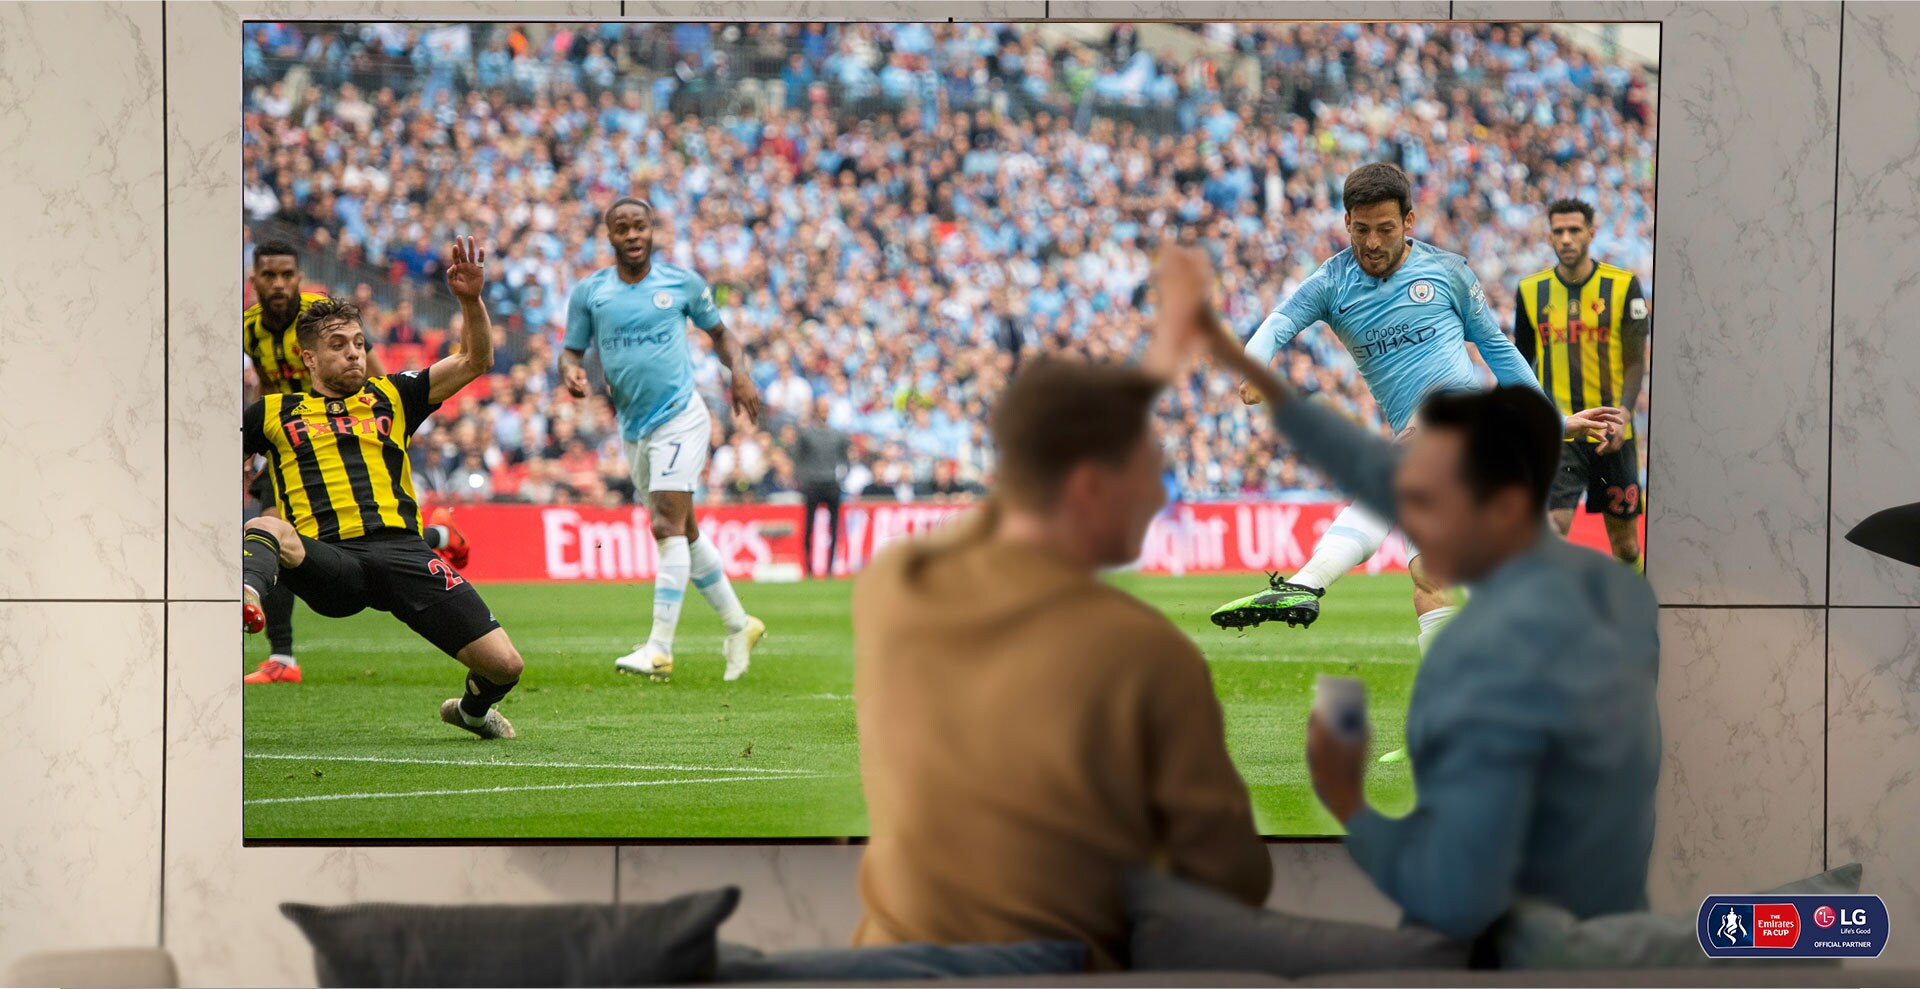 שני אנשים חוגגים תוך צפייה במשחק כדורגל בטלוויזיית NanoCell בסלון. מתחת מומחש כיצד טכנולוגיית NanoCell משפרת את איכות התמונה.